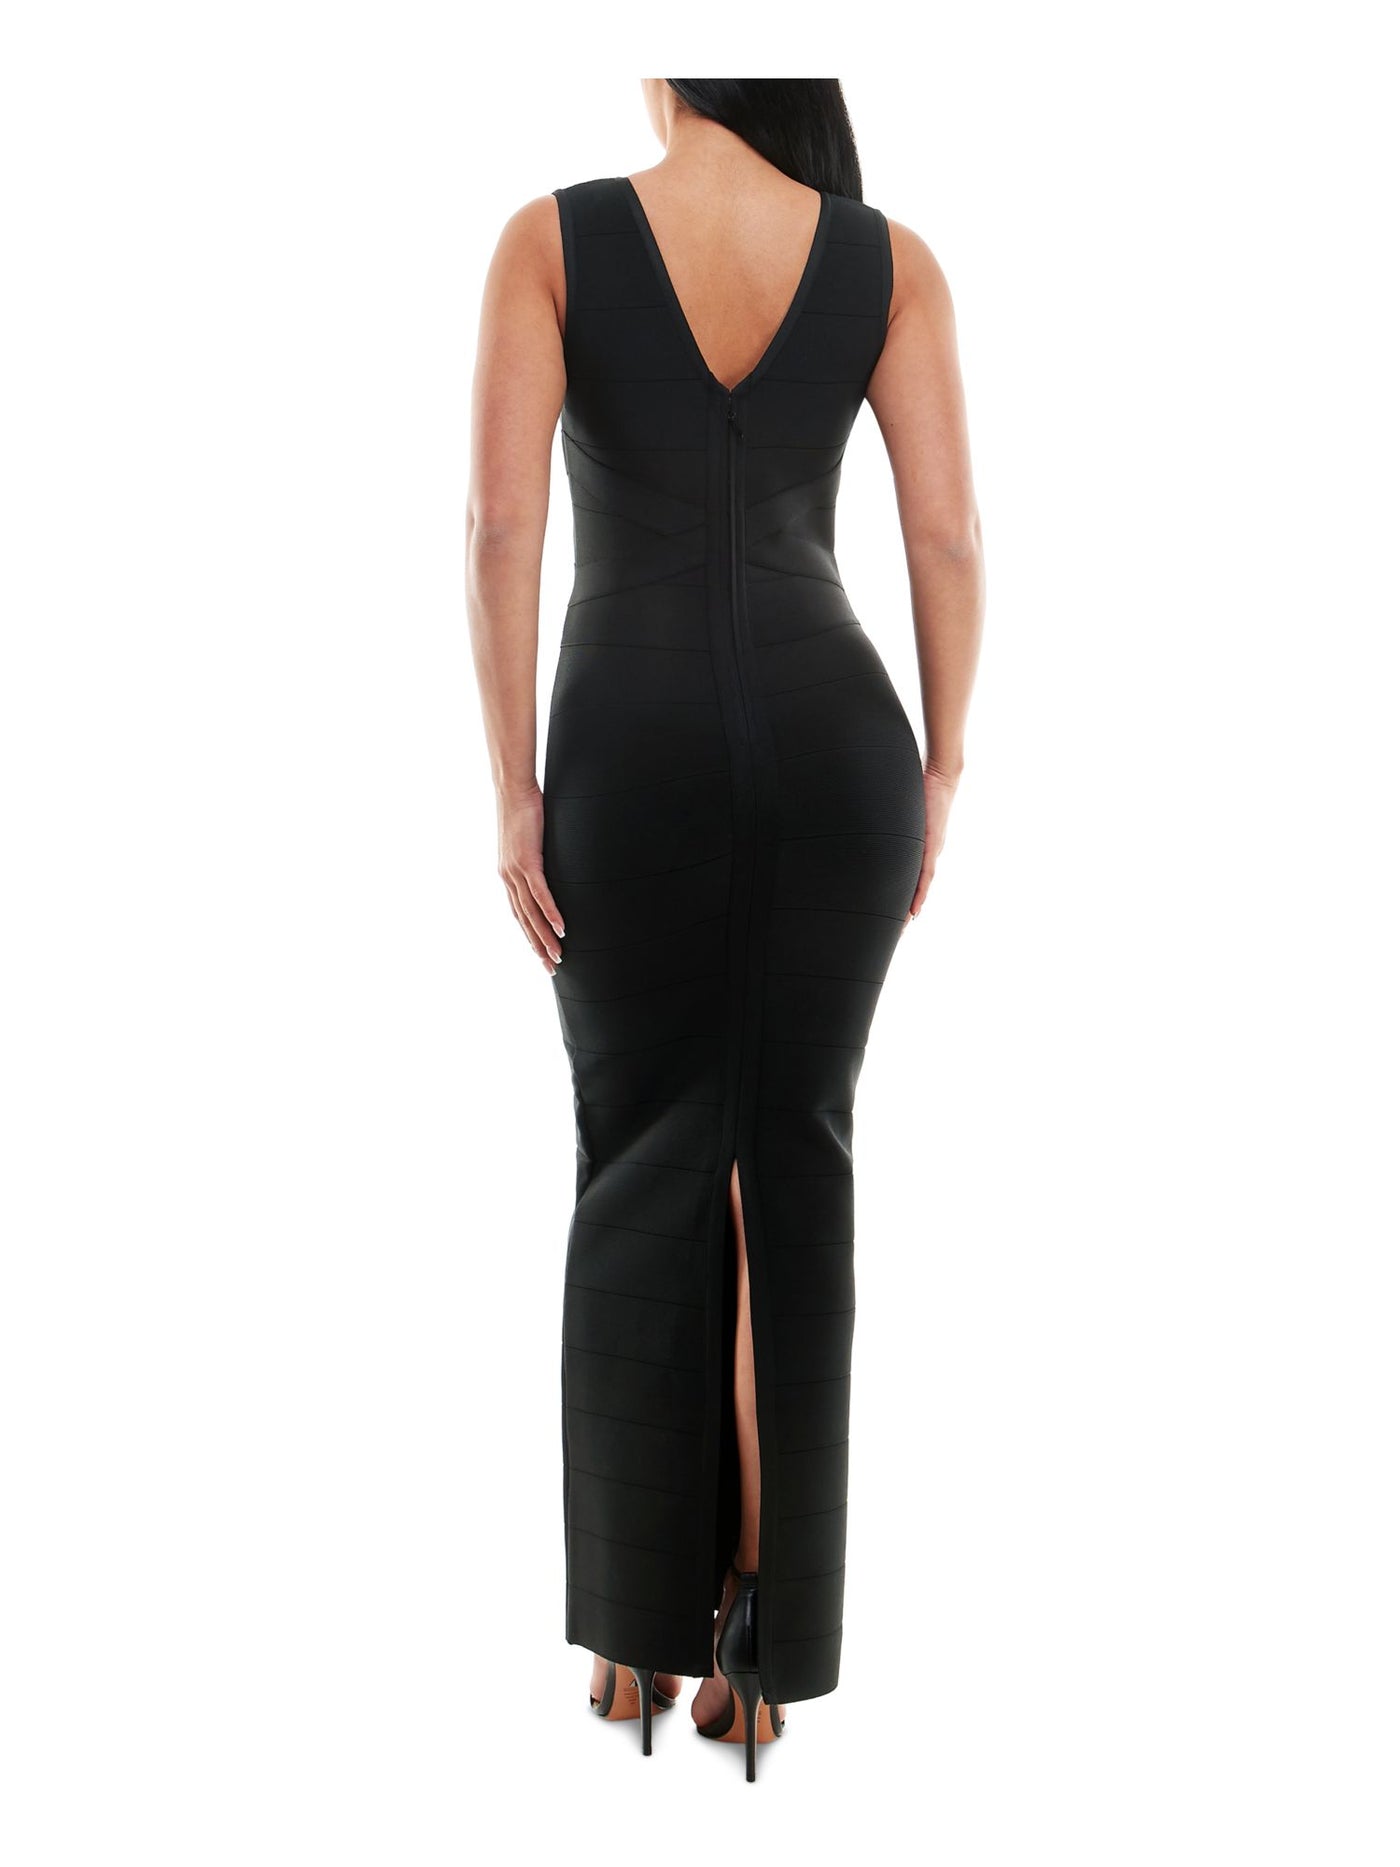 BEBE Womens Black Zippered Unlined V Back Slit Sleeveless V Neck Full-Length Cocktail Gown Dress M